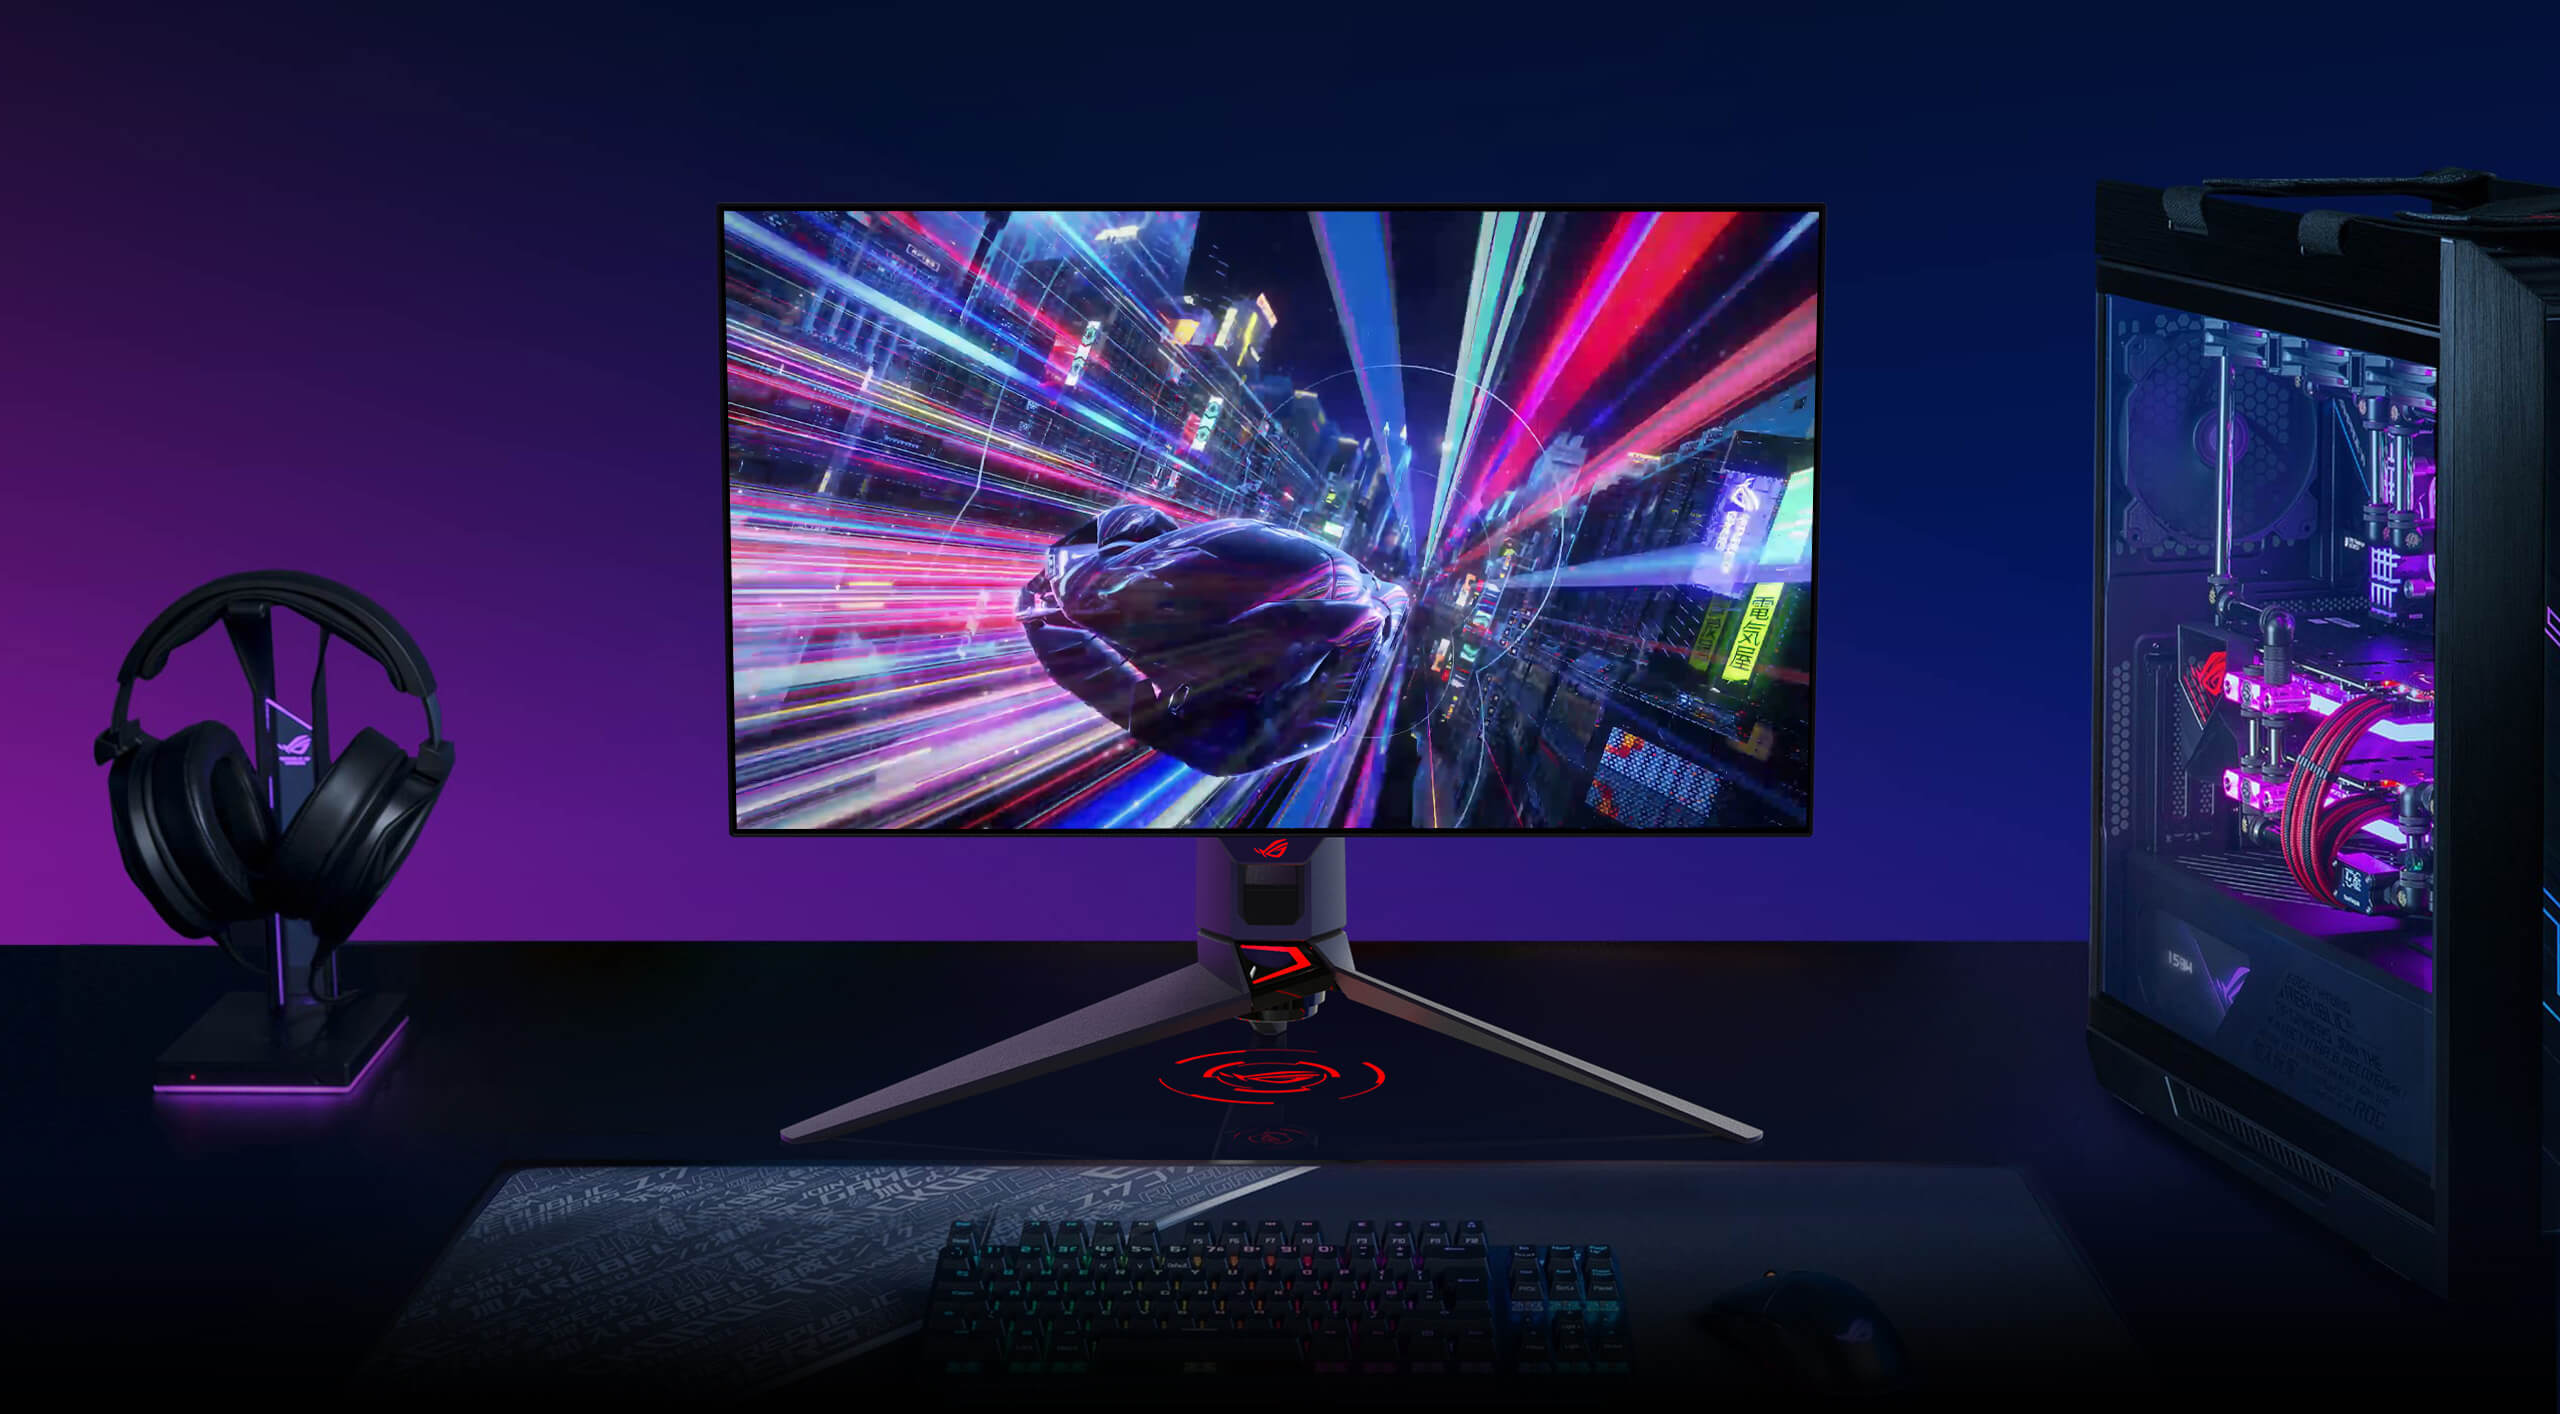 El PG27AQDM es un monitor OLED gaming de 27 pulgadas a 240 Hz que ofrece unas imágenes gaming excepcionales.